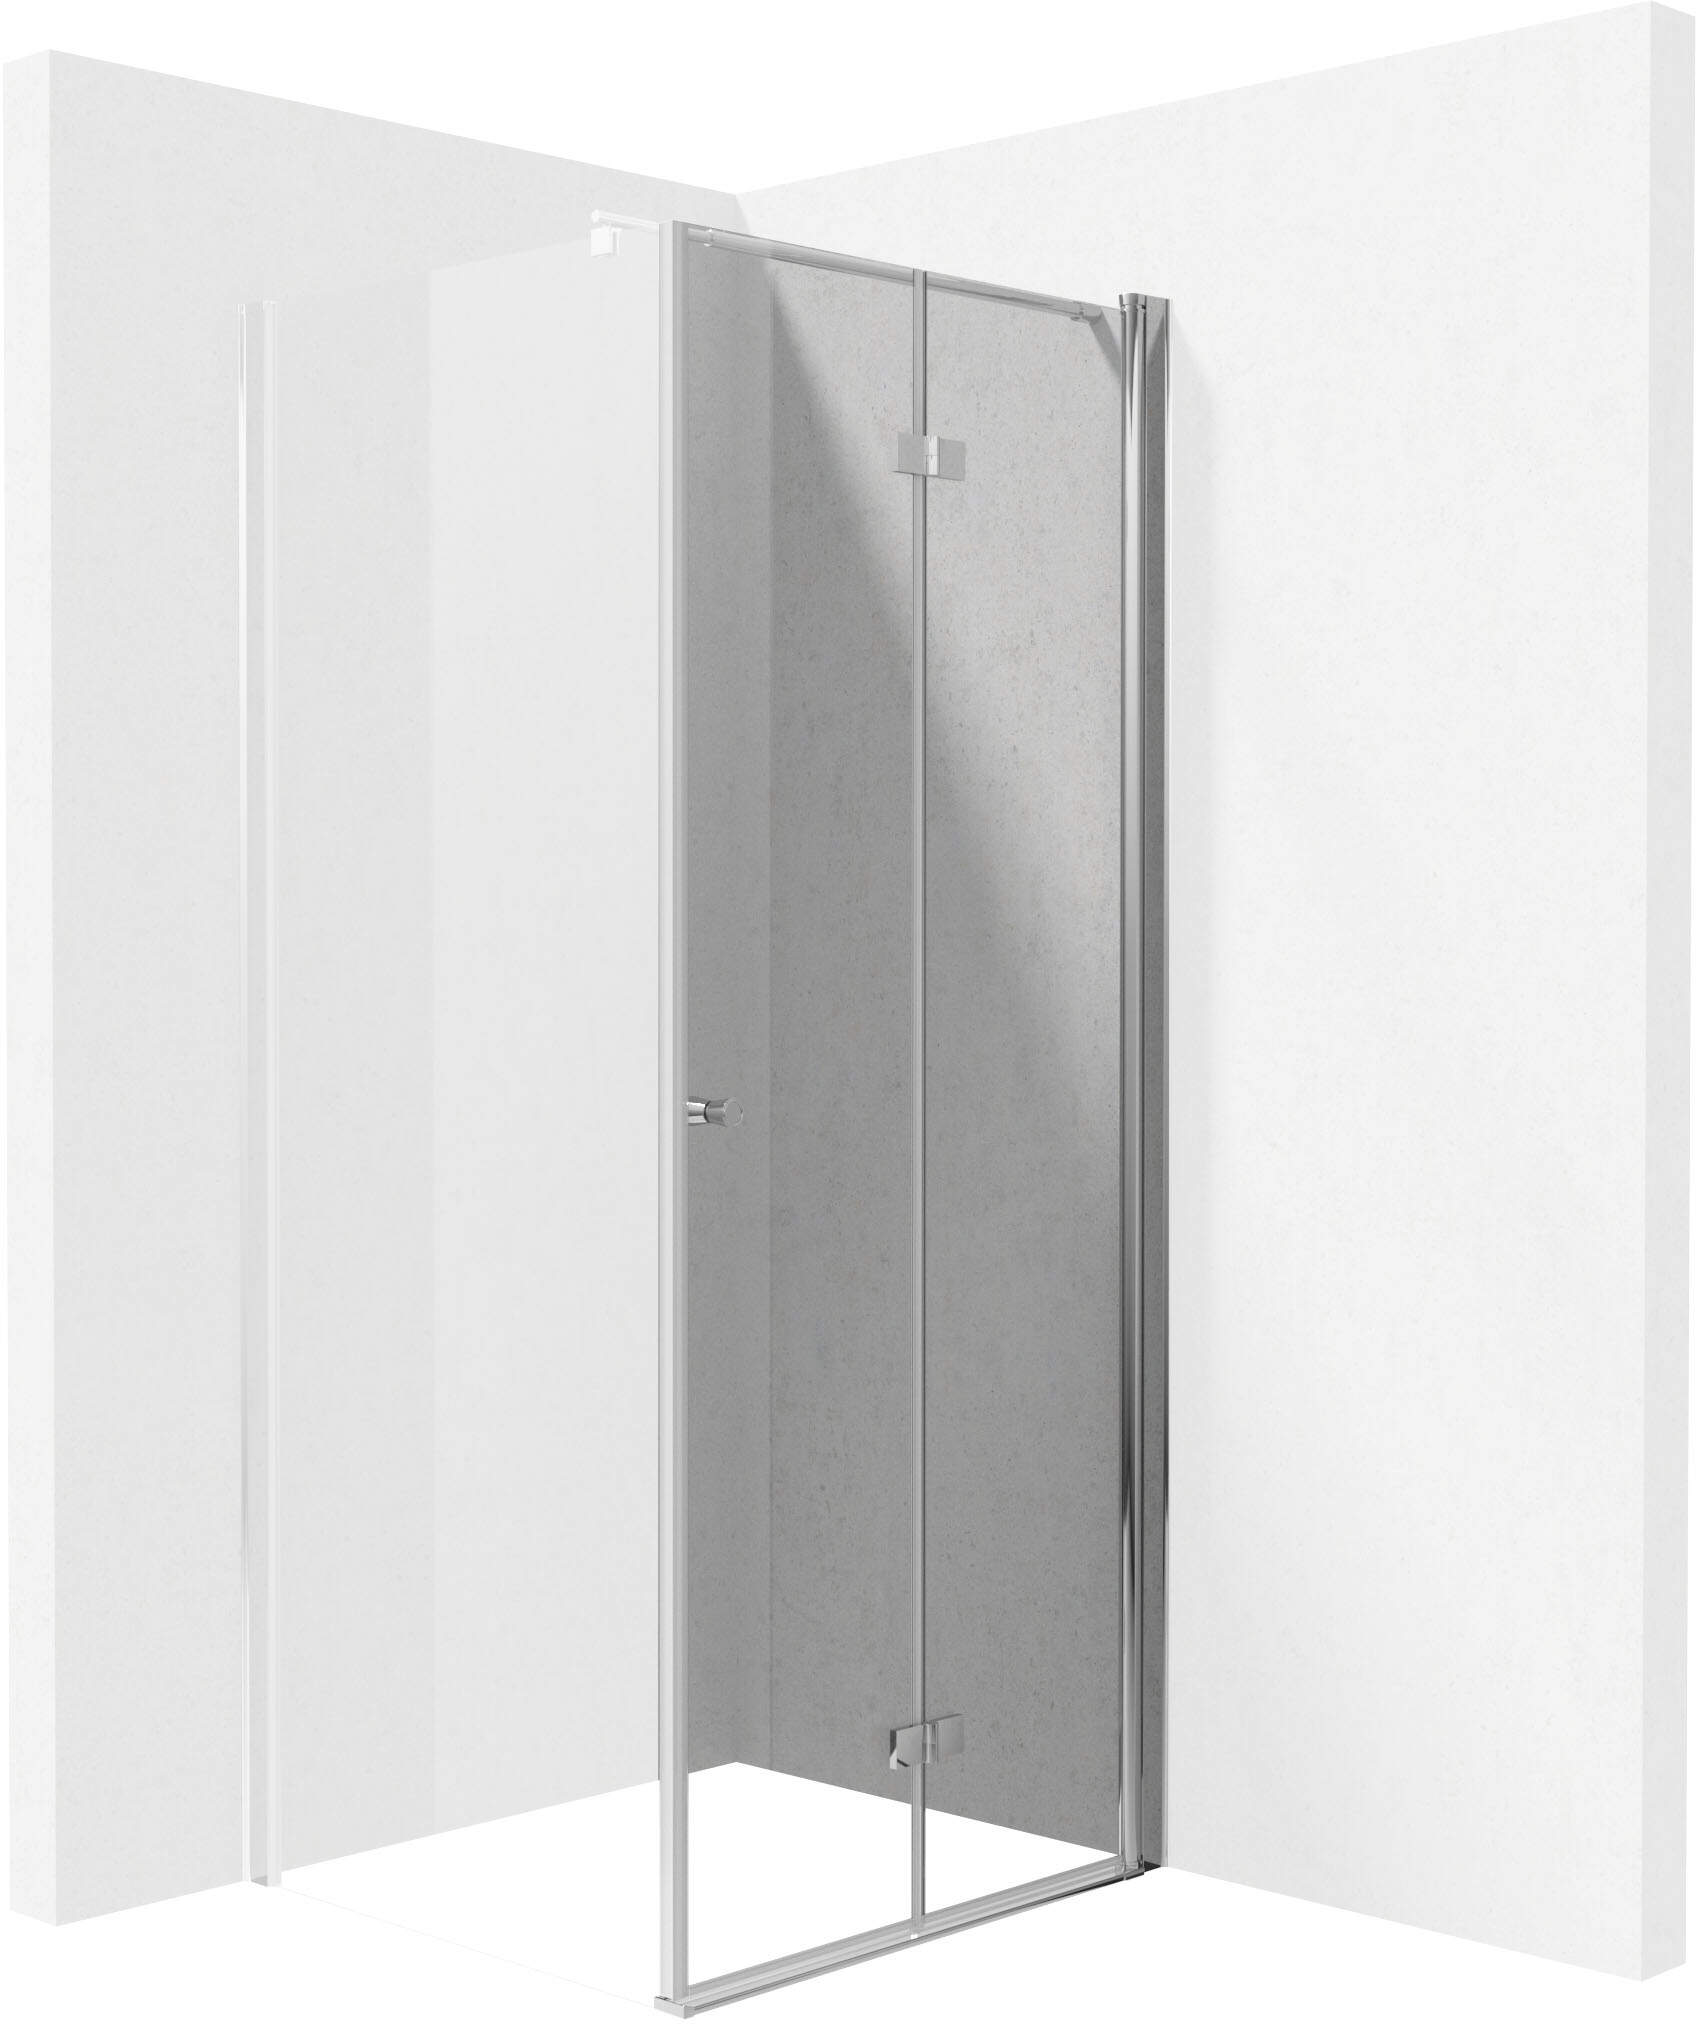 Kerria Plus Sprchové dvere, 100 cm - sklopné